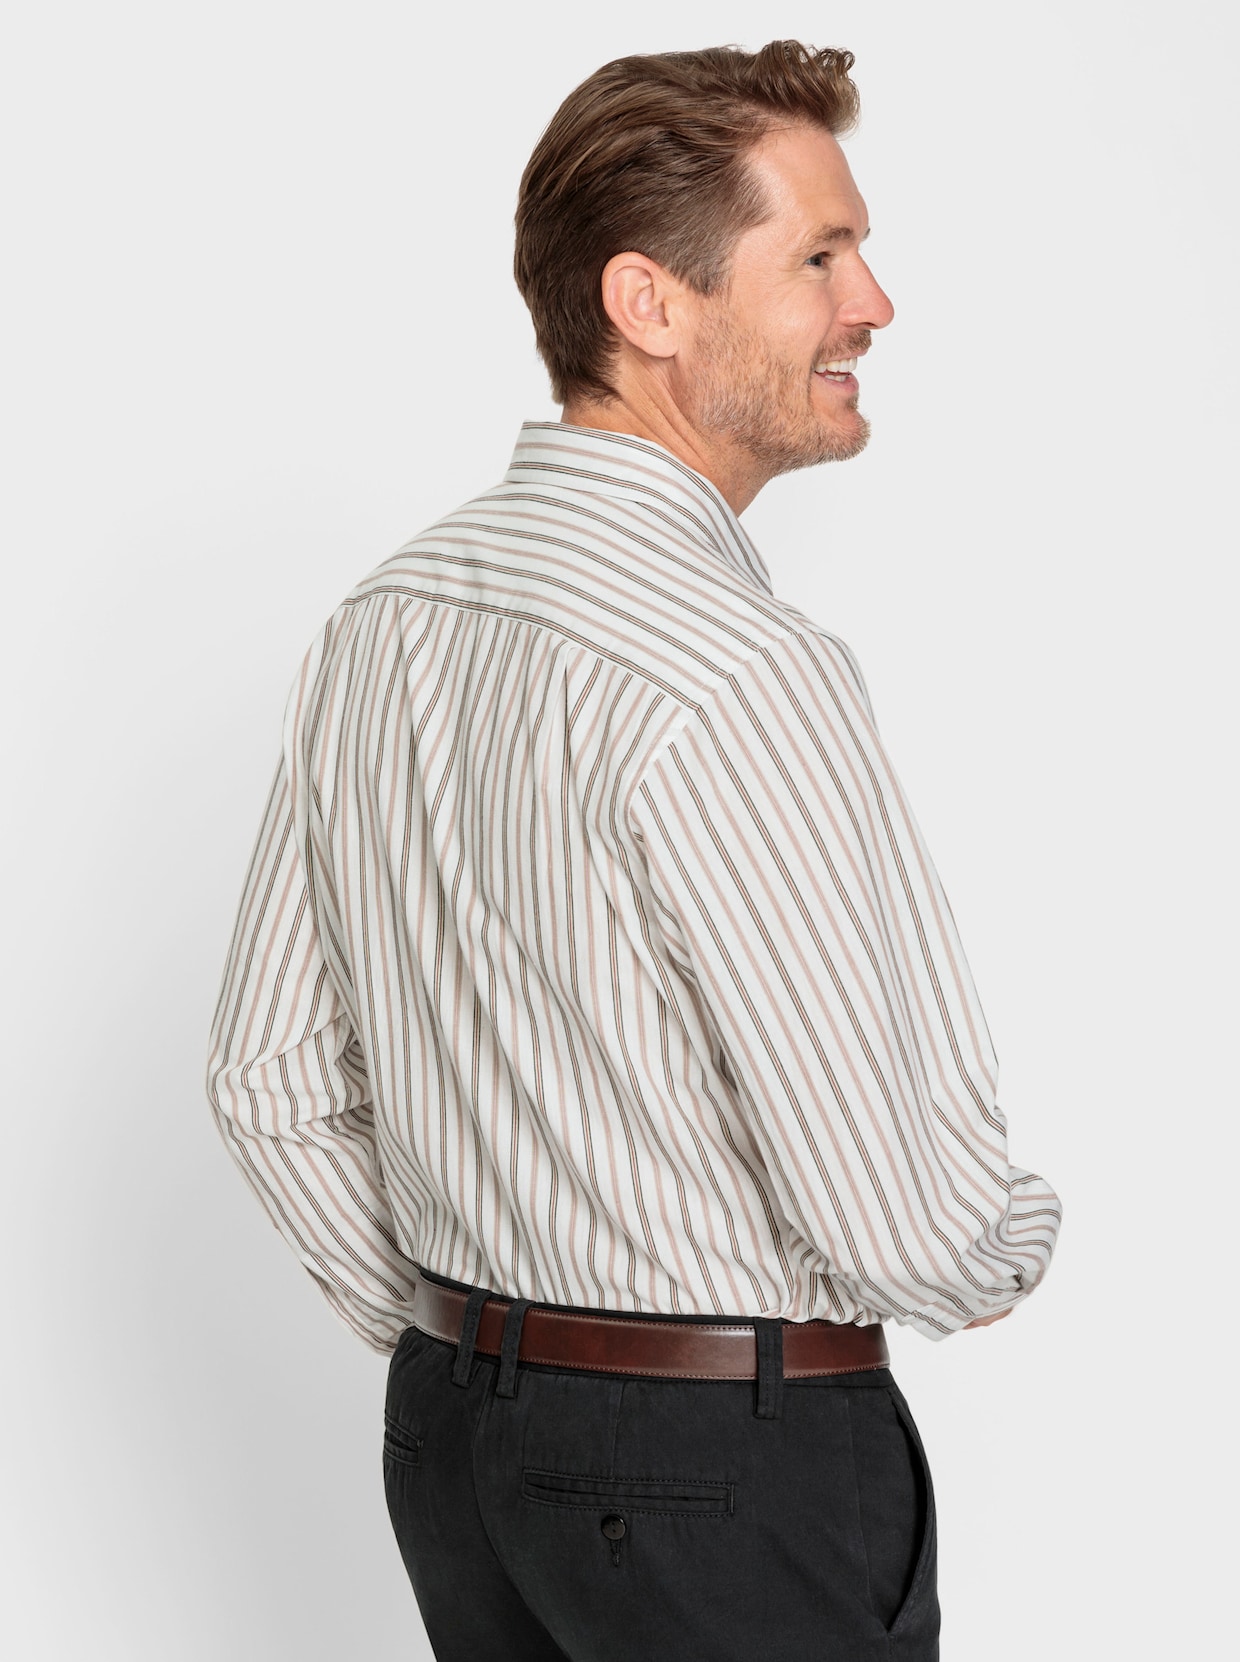 Marco Donati Hemd met lange mouwen - sesam/wit gestreept